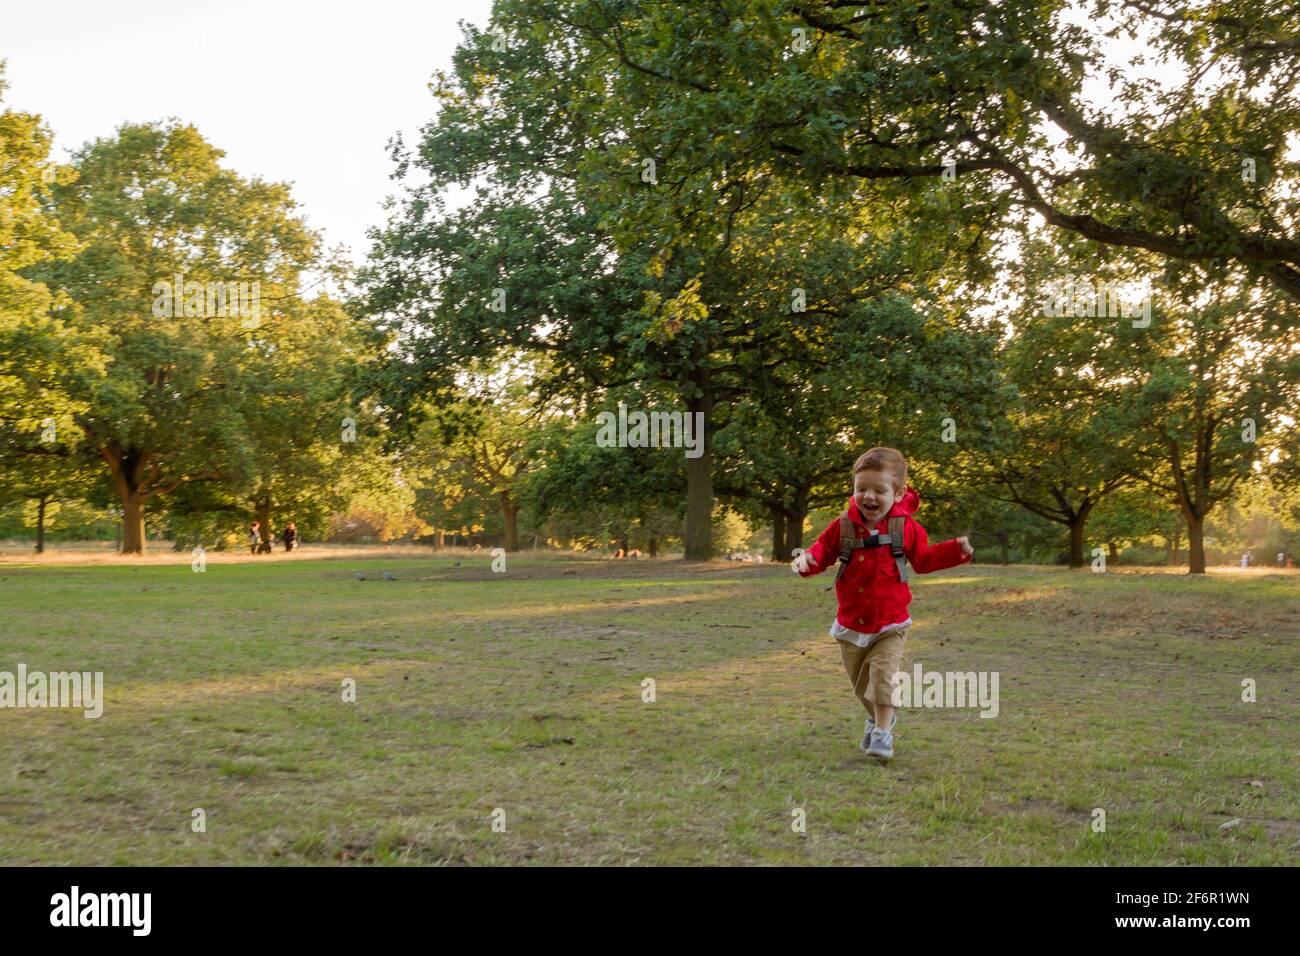 Un lindo, pelirrojo, niño con una chaqueta roja corriendo en un césped en un parque en una noche soleada Foto de stock